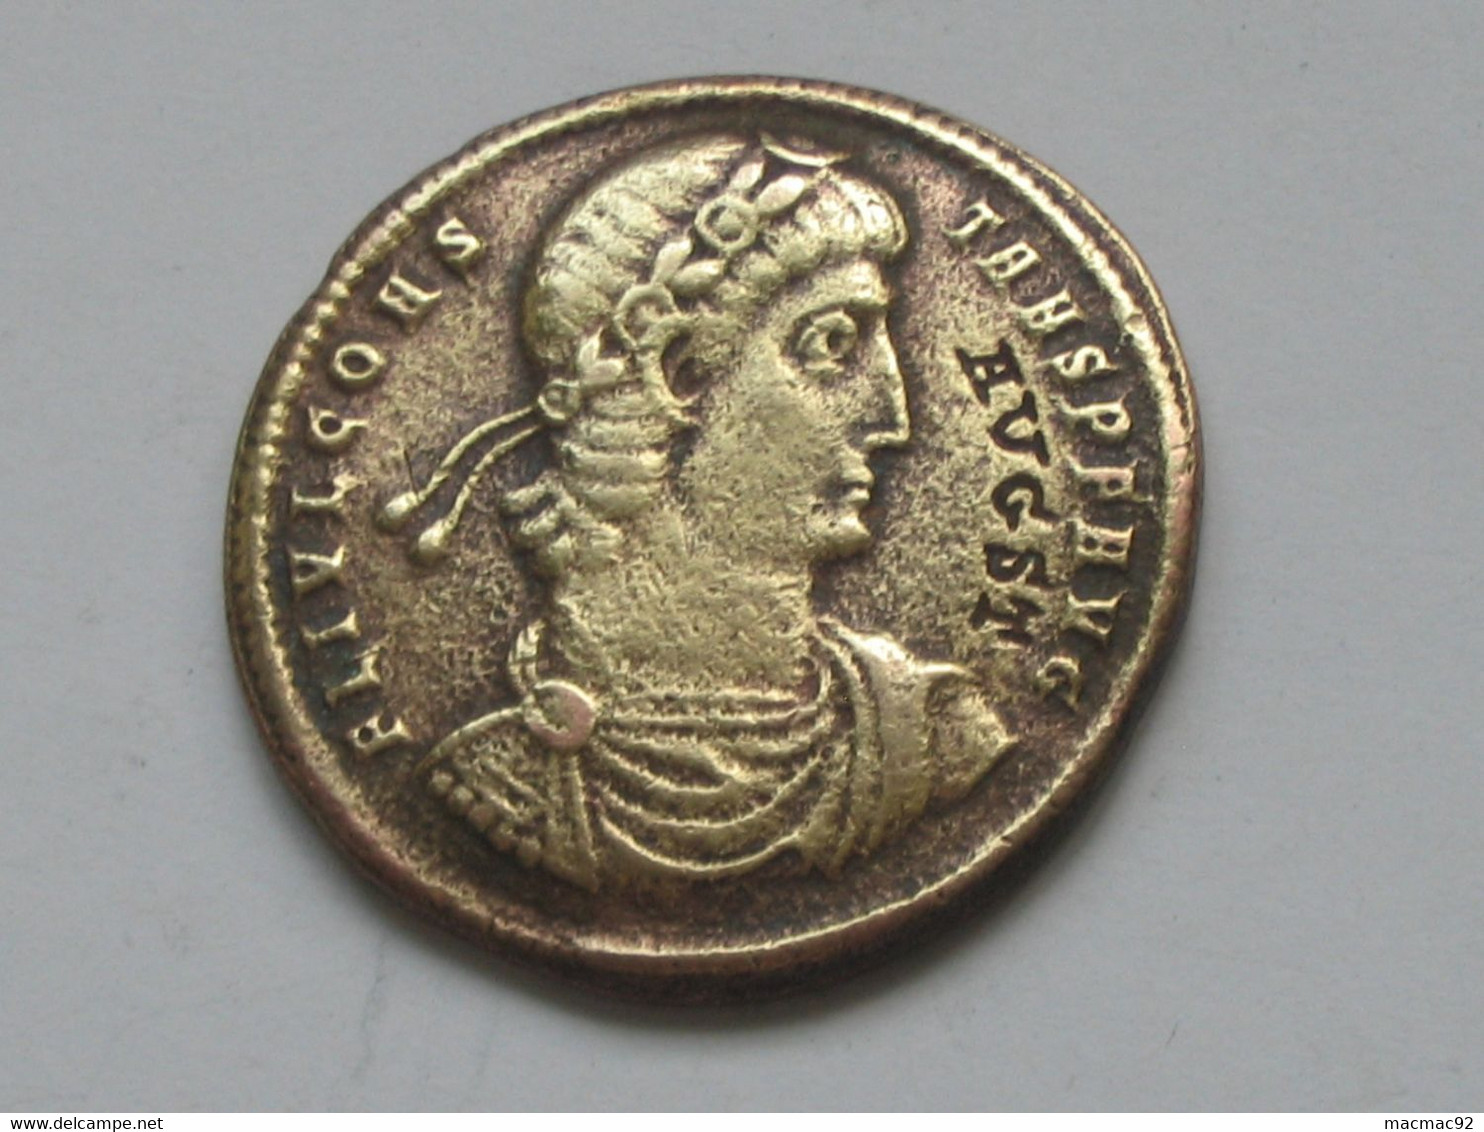 Fausse Ou Copie - Monnaie Ou Médaille ROMAINE  à Identifier   **** EN ACHAT IMMEDIAT   **** - Monedas Falsas